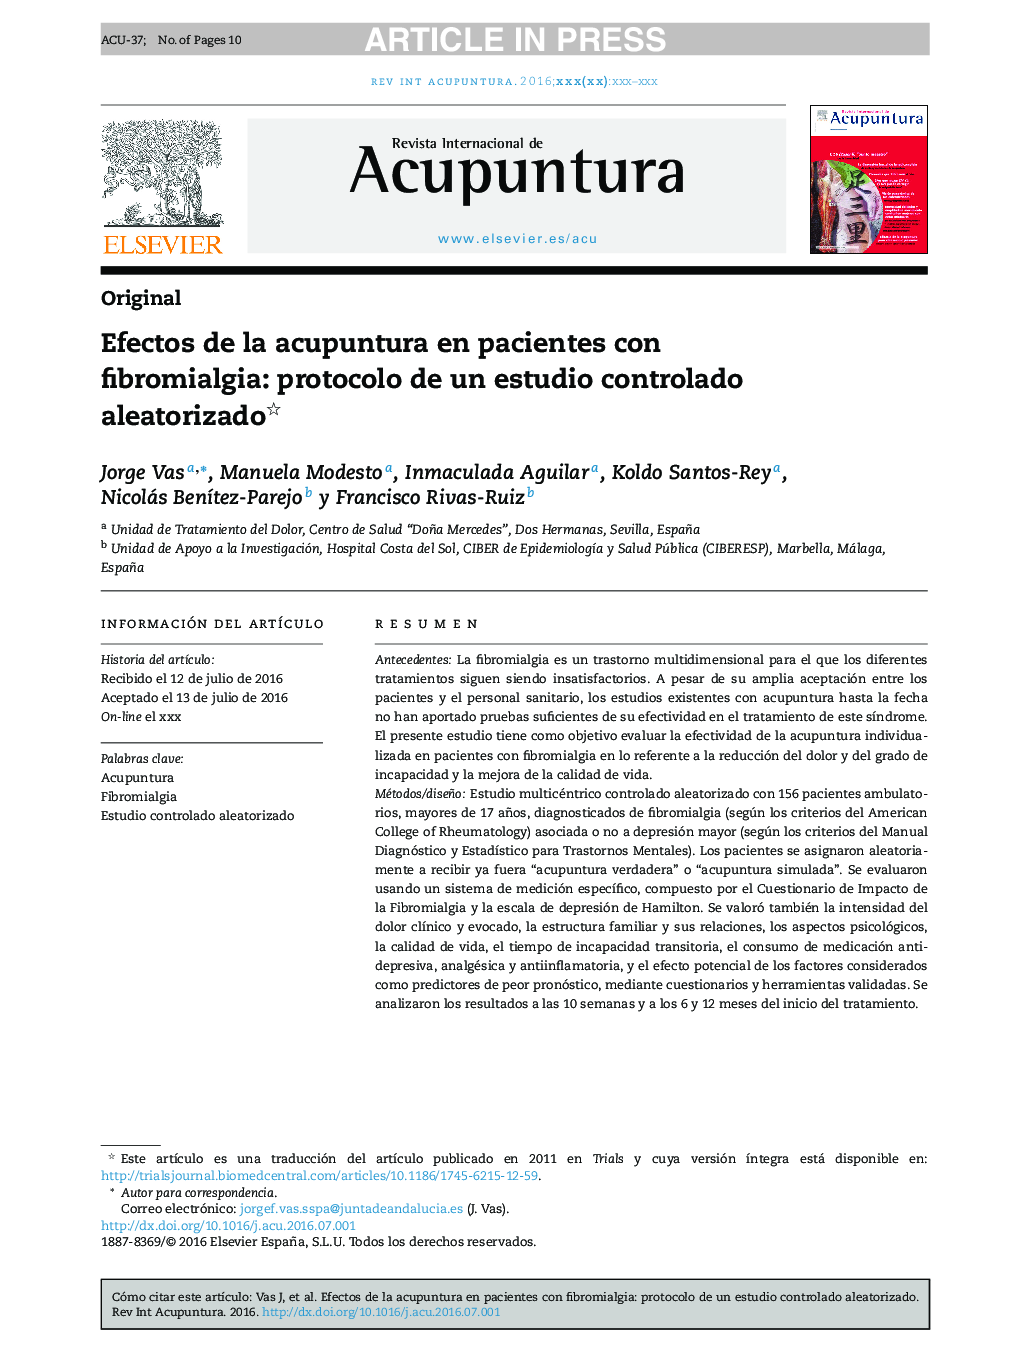 Efectos de la acupuntura en pacientes con fibromialgia: protocolo de un estudio controlado aleatorizado